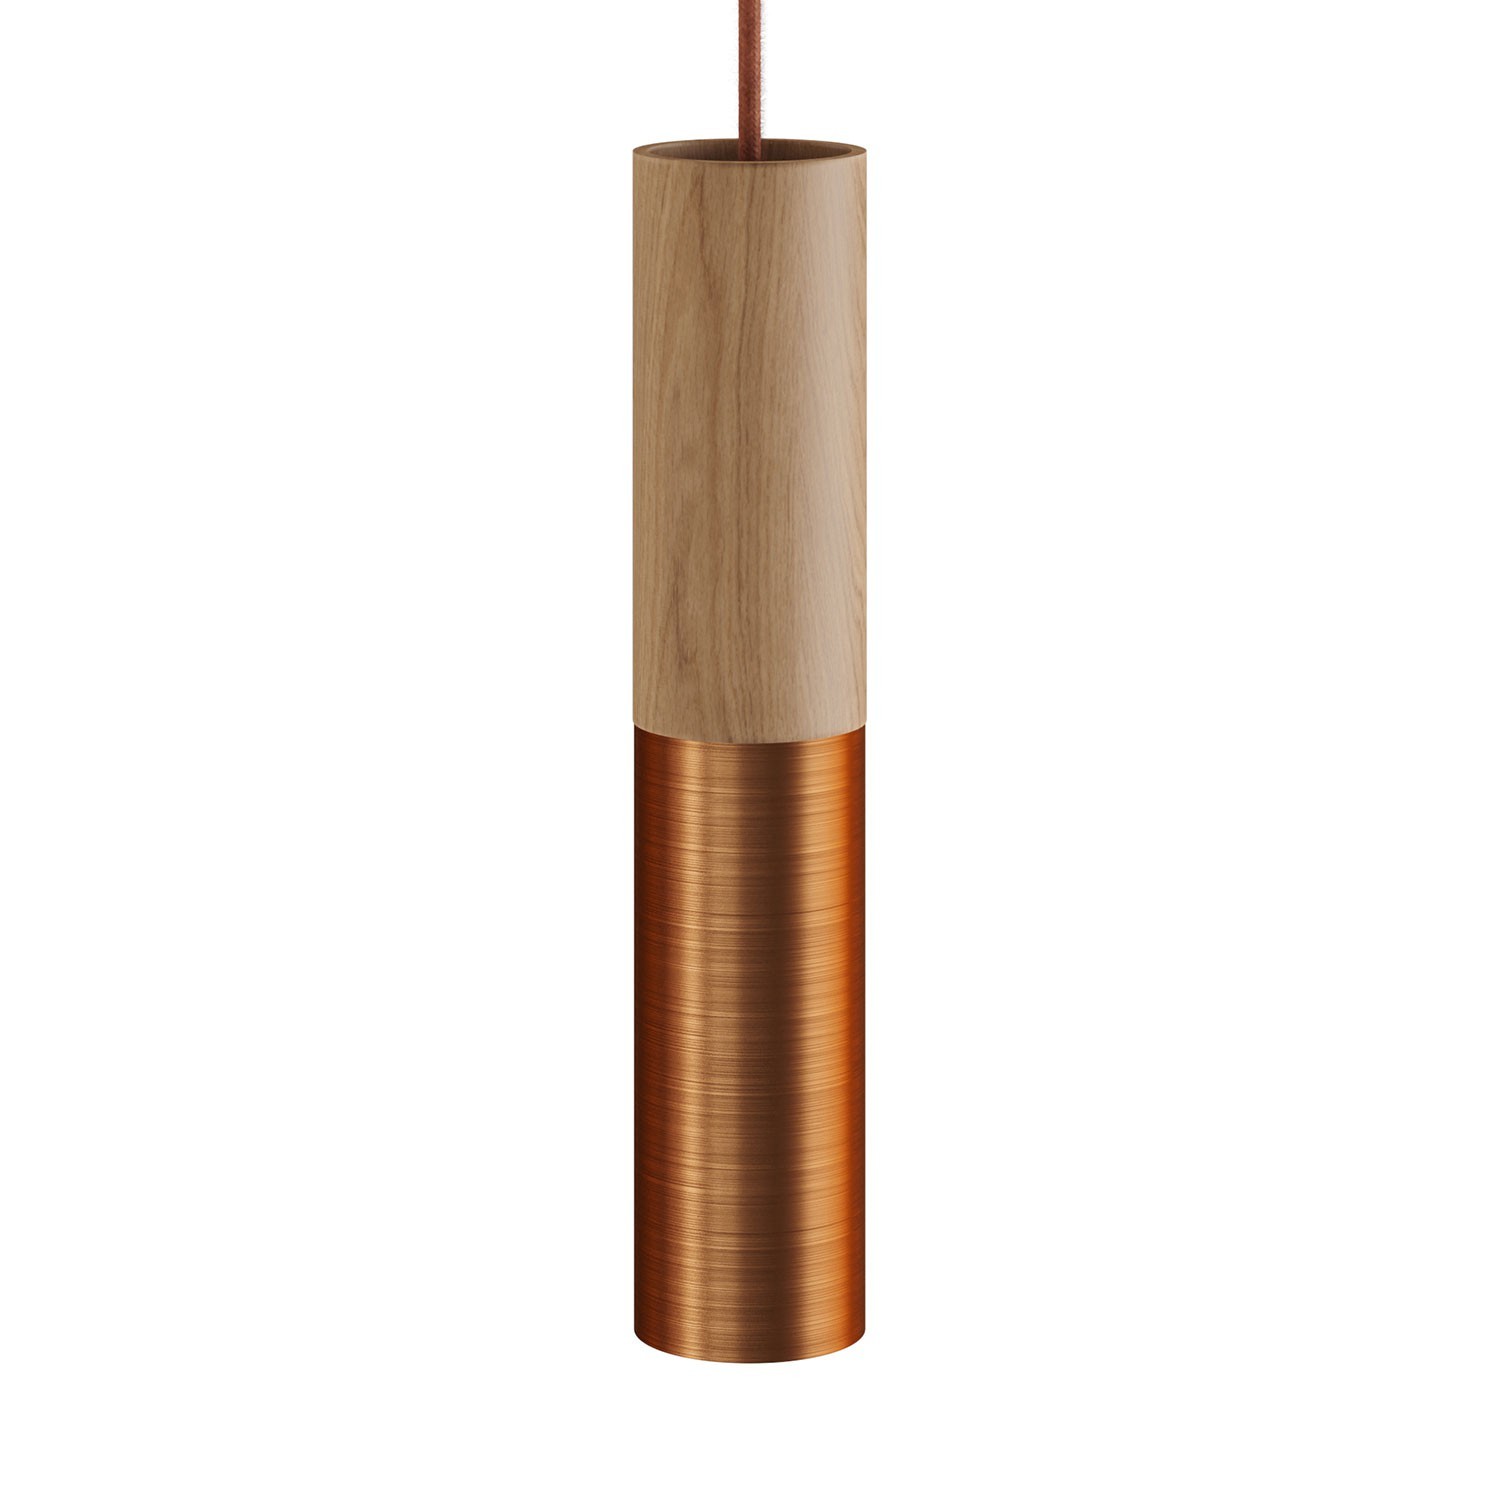 Tub-E14, Rohr aus Holz und Metall für Strahler mit E14 Lampenfassung mit Doppelklemmring